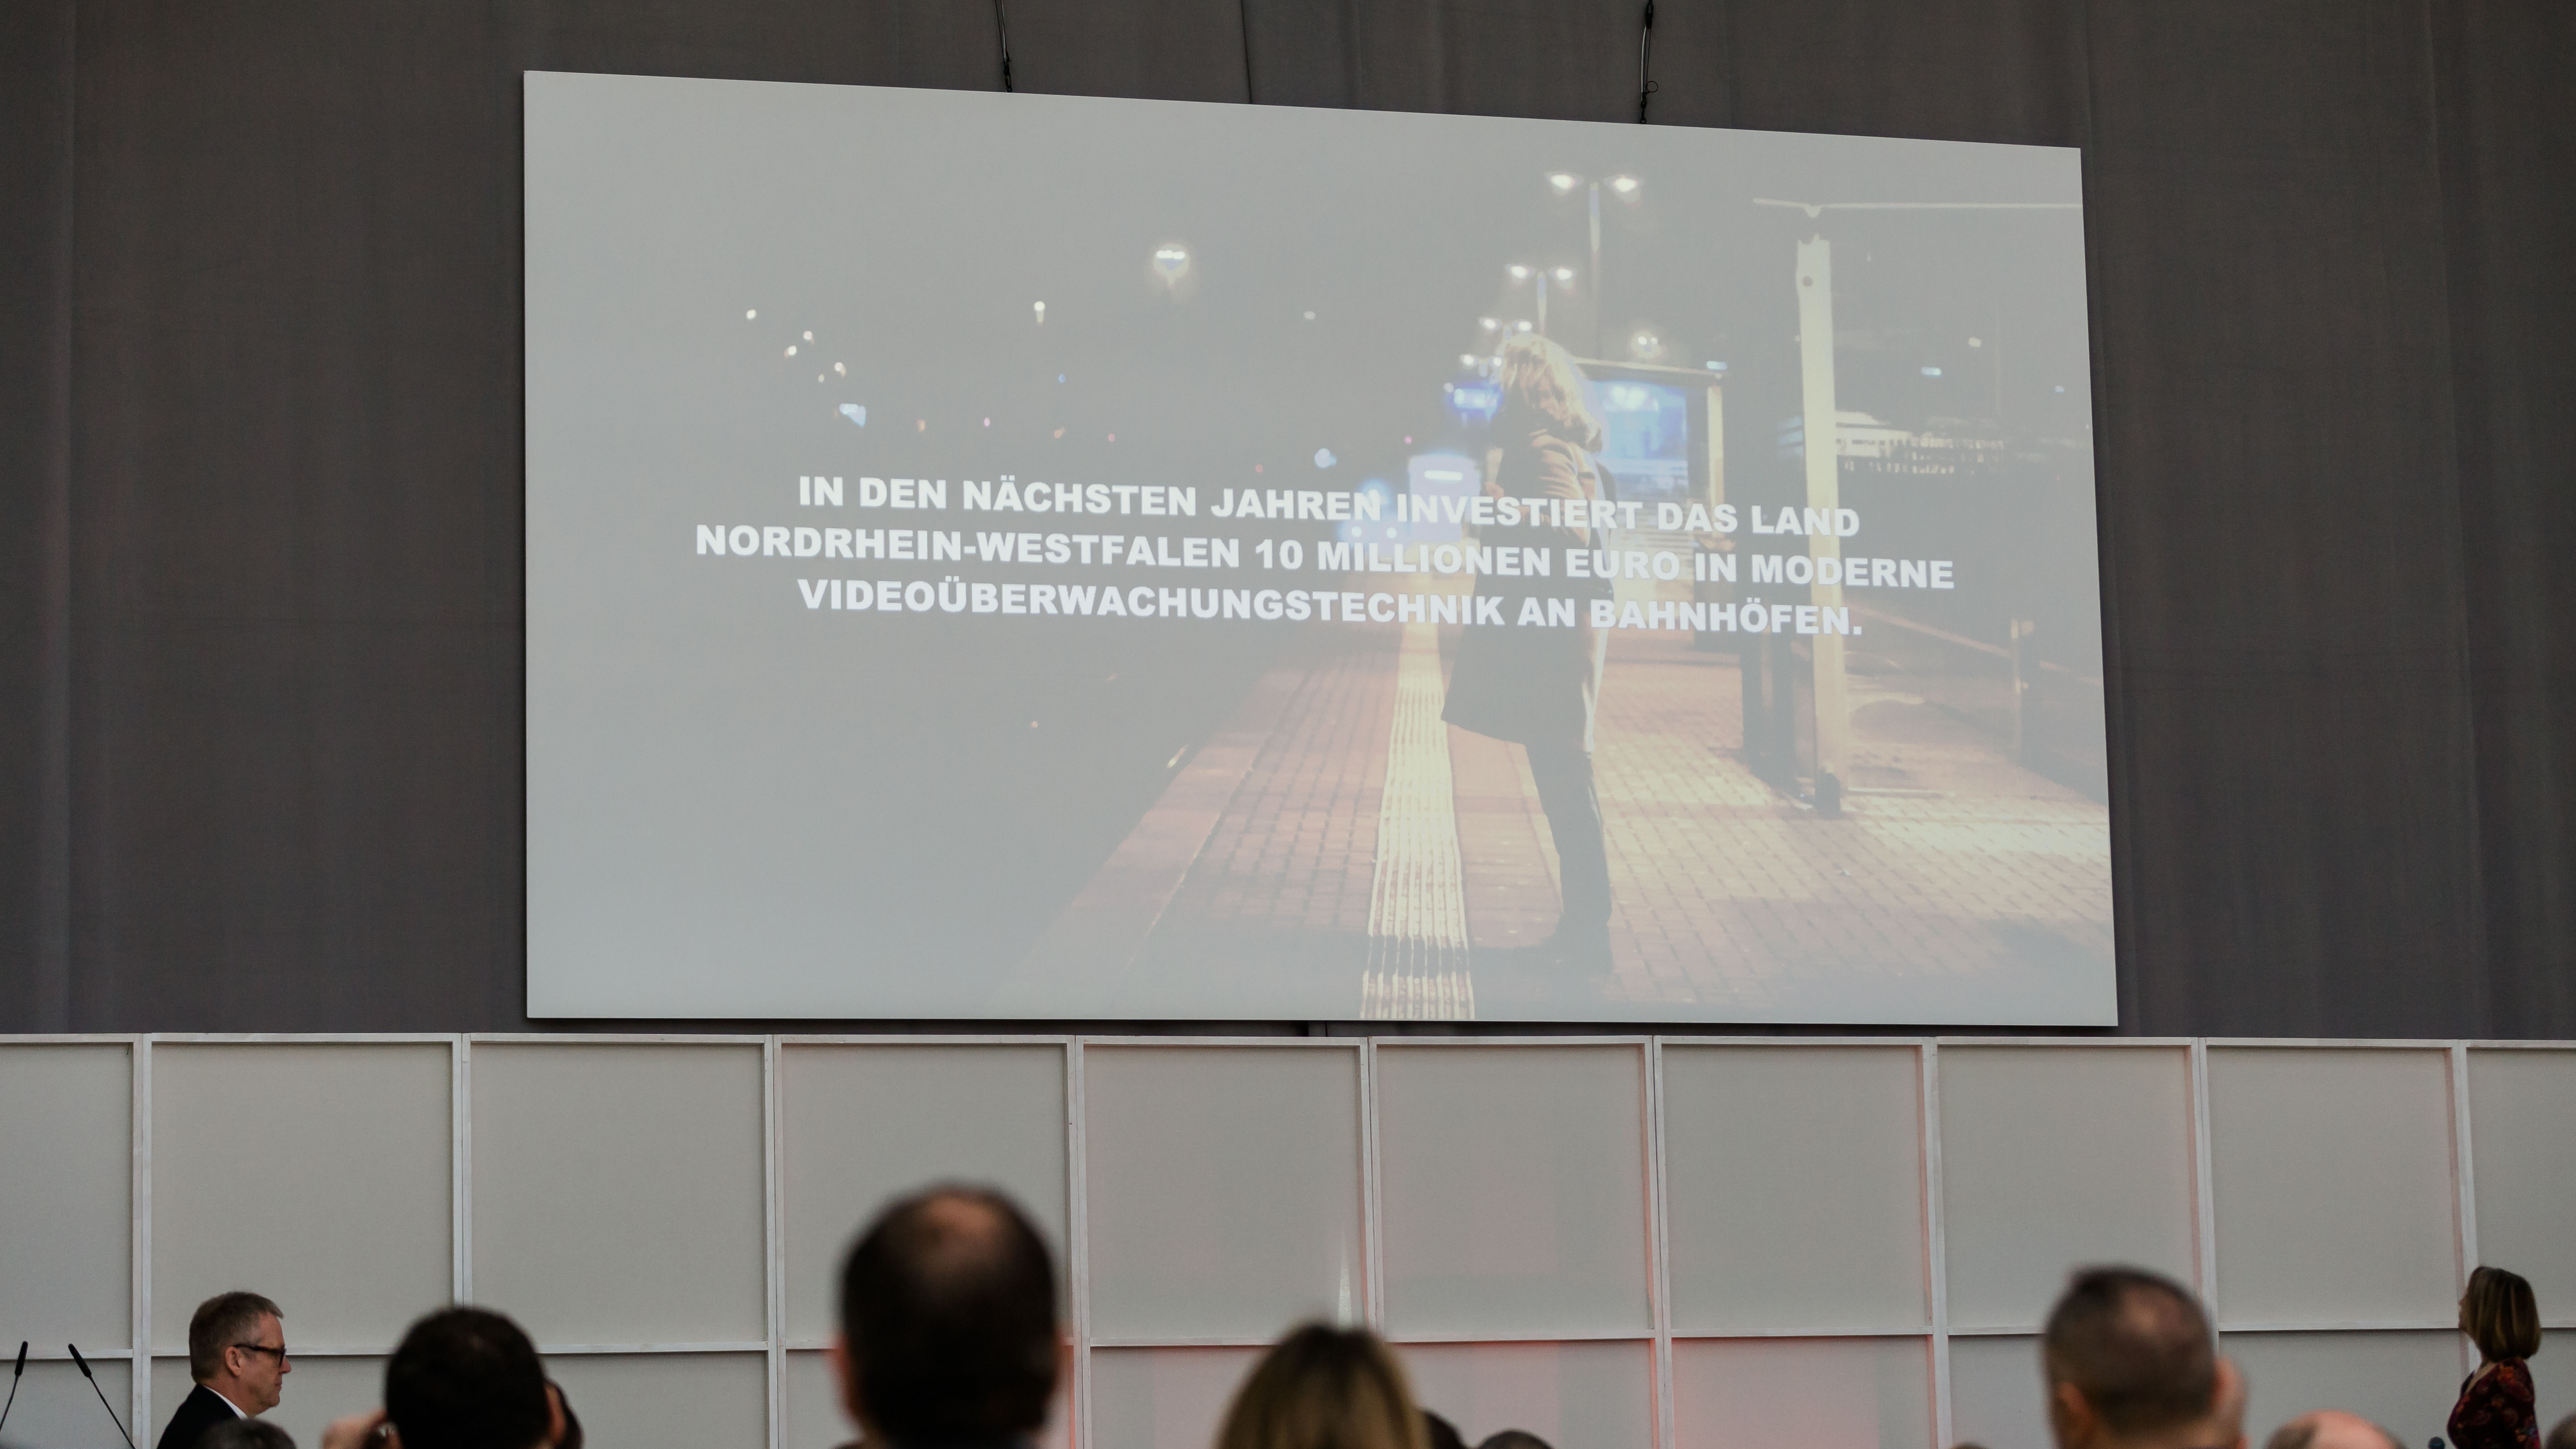 Eine Folie der Präsentation auf einer großen Leinwand. Dort zu lesen: "In den nächsten jahren investiert das Land NRW 10 Millionen Euro in moderne Videoüberwachungstechnik an Bahnhöfen". - öffnet Bild in größerer Ansicht